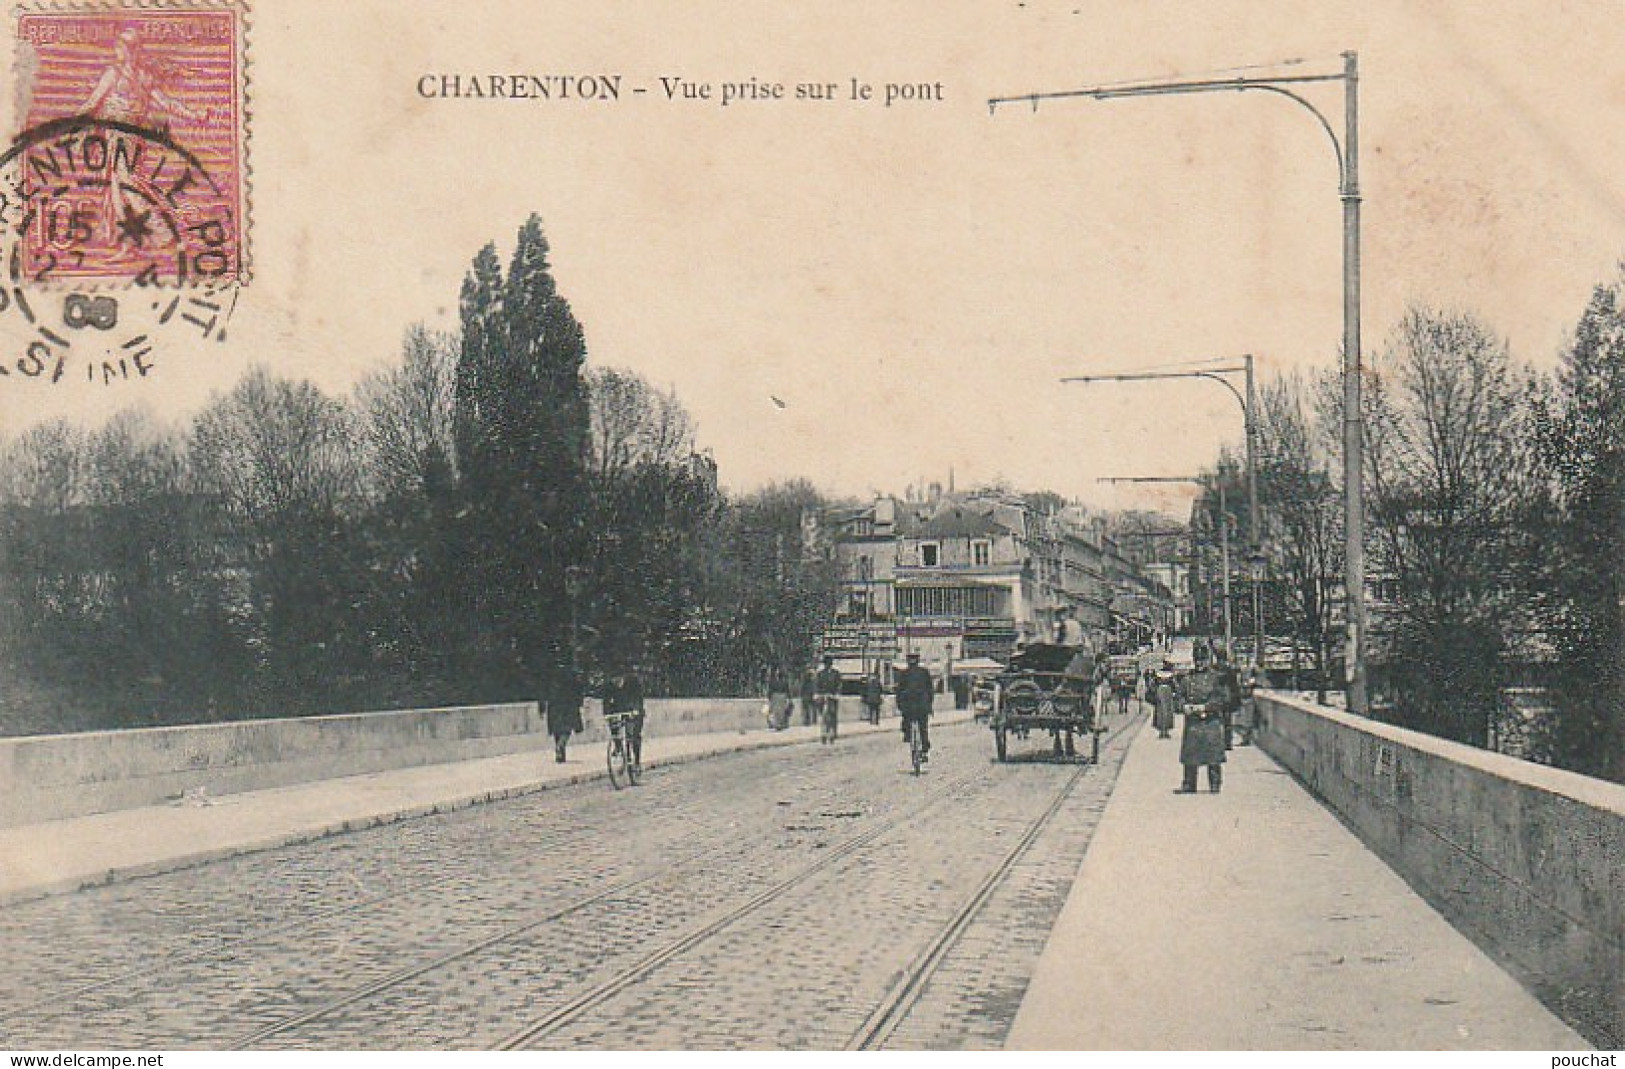 MO 10-(94) CHARENTON - VUE PRISE SUR LE PONT - CARRIOLE A CHEVAL - ANIMATION - 2 SCANS - Charenton Le Pont